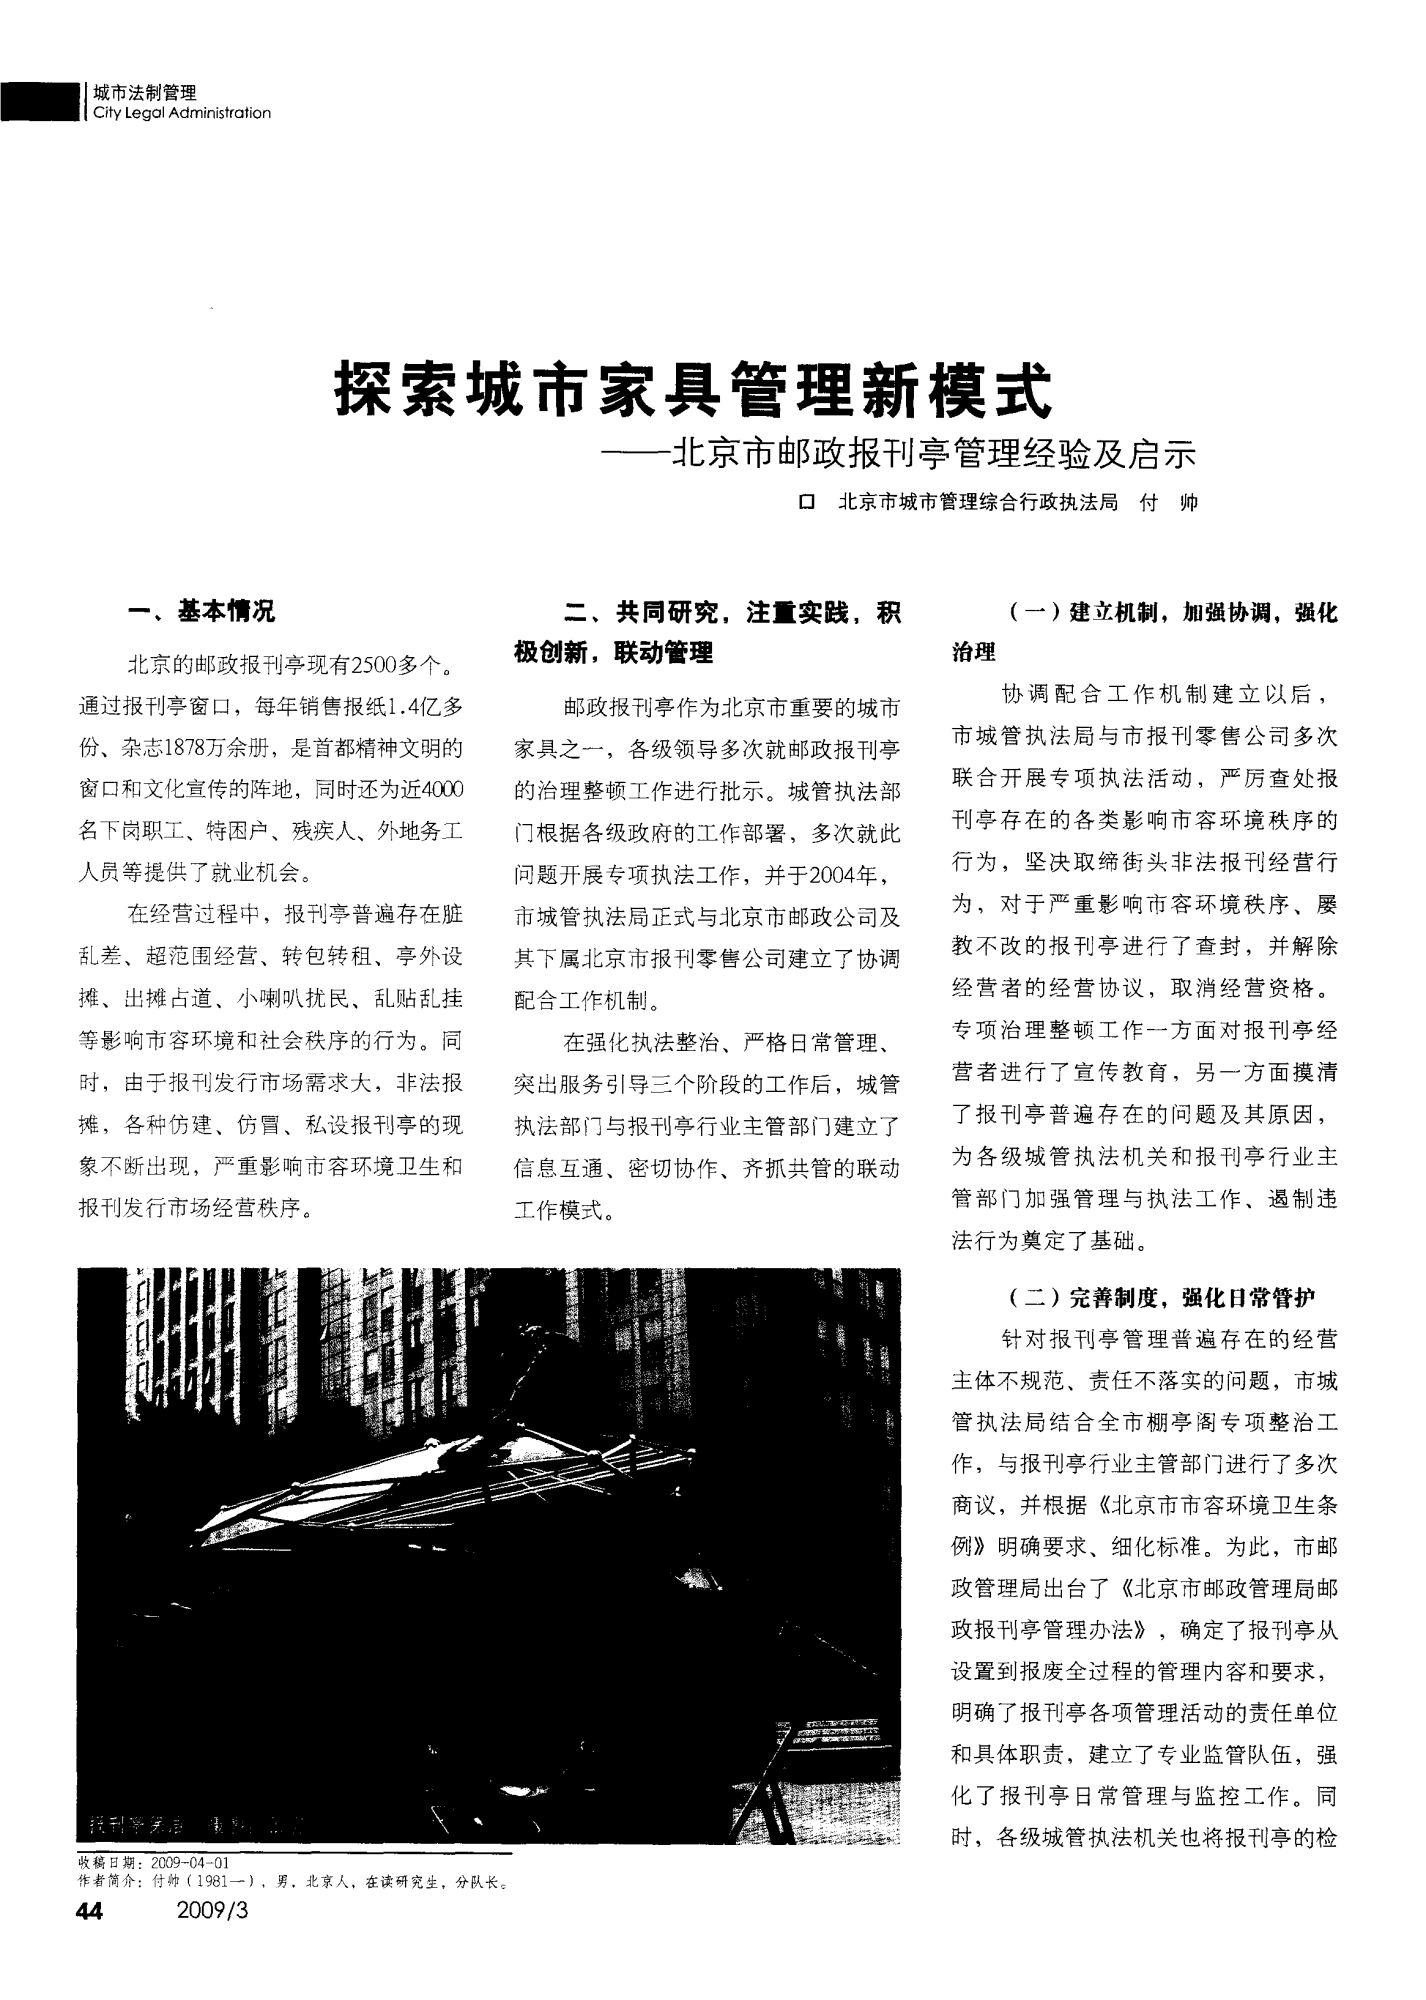 探索城市家具管理新模式——北京市邮政报刊亭管理经验及启示